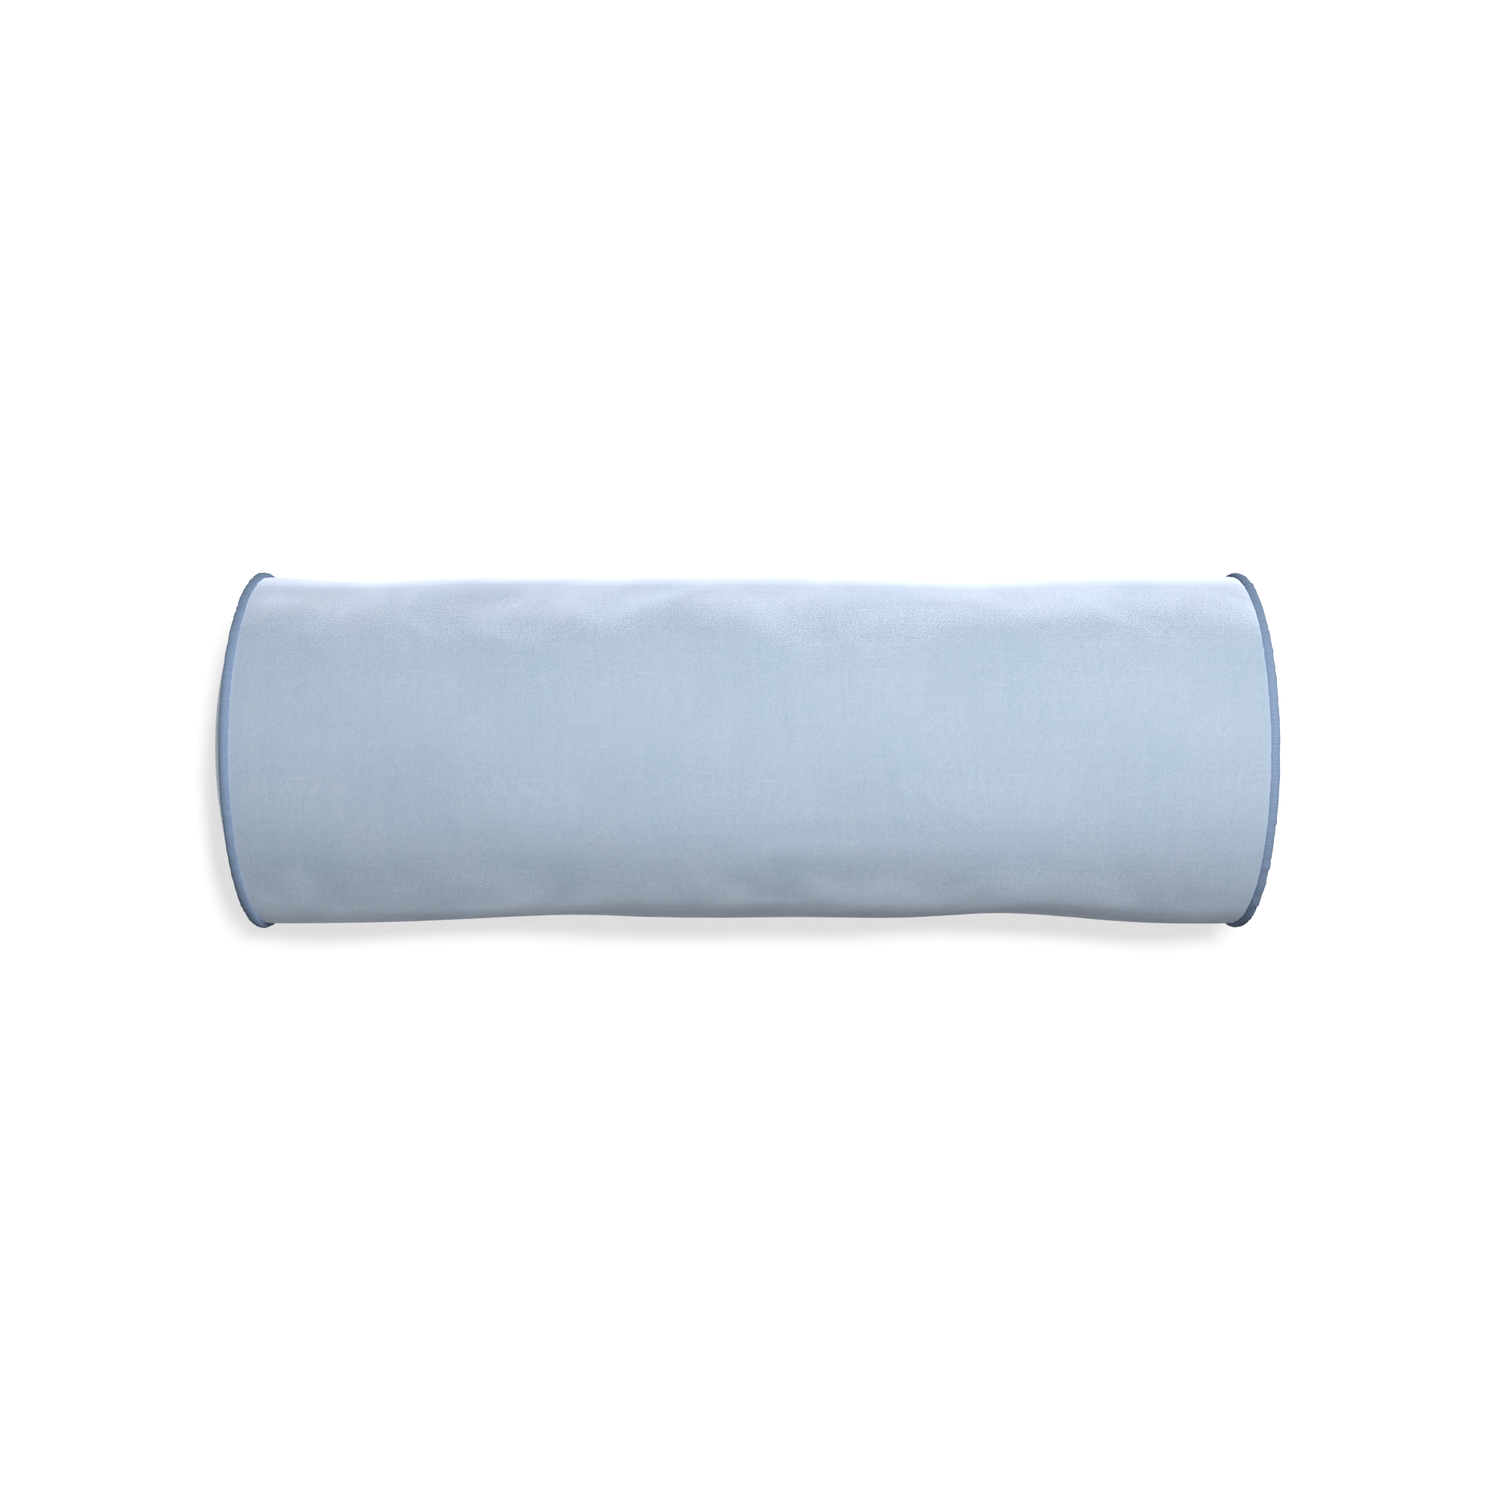 bolster light blue velvet pillow with sky blue piping